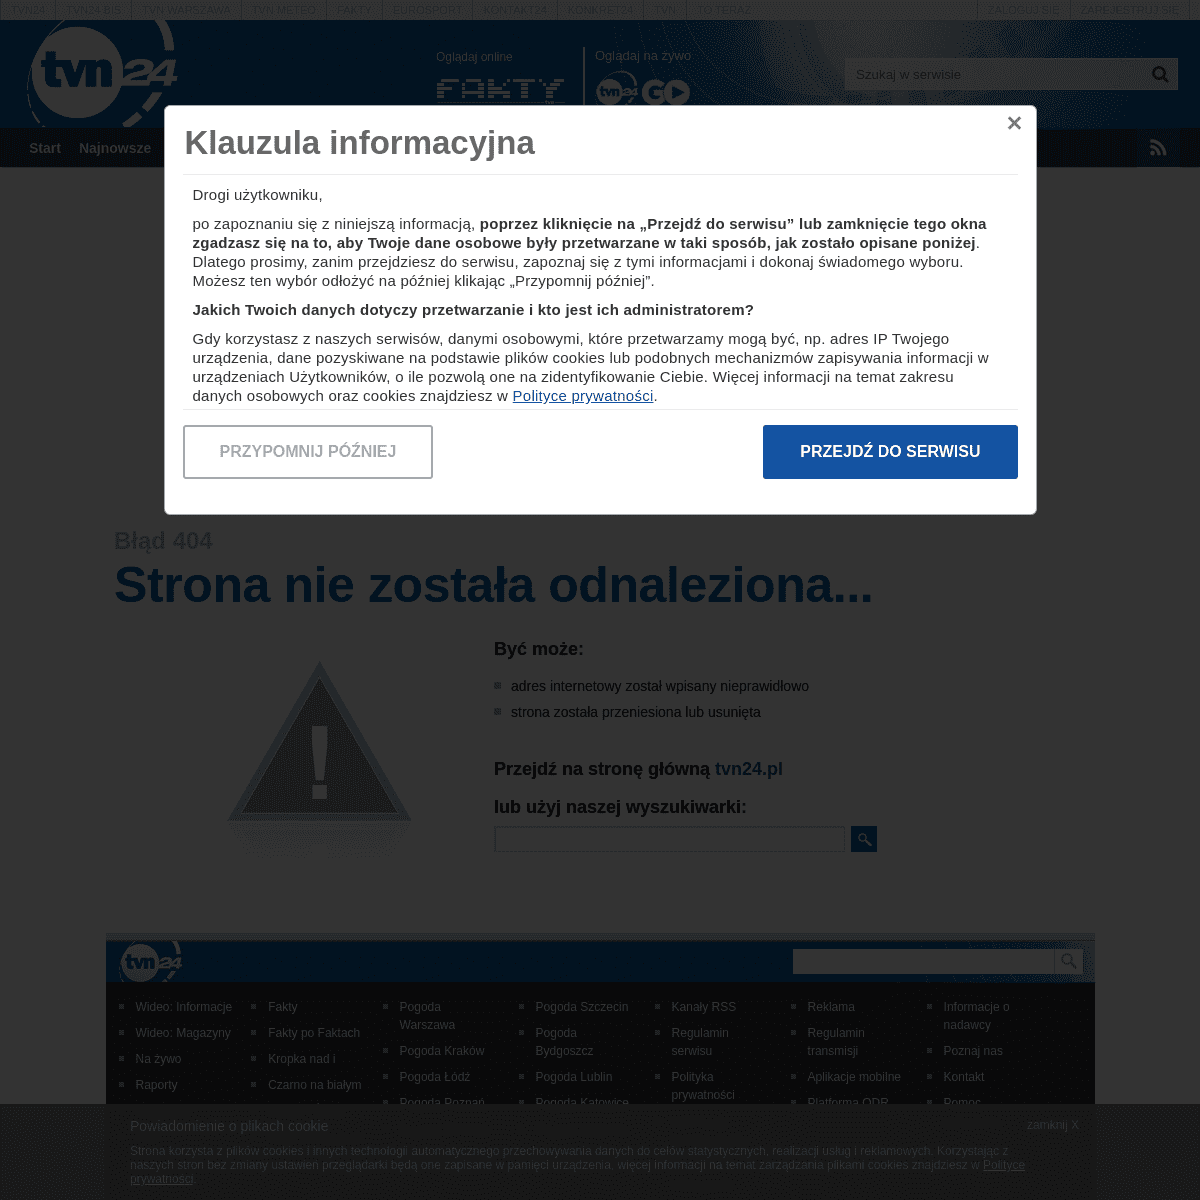 A complete backup of eurosport.tvn24.pl/pilka-nozna